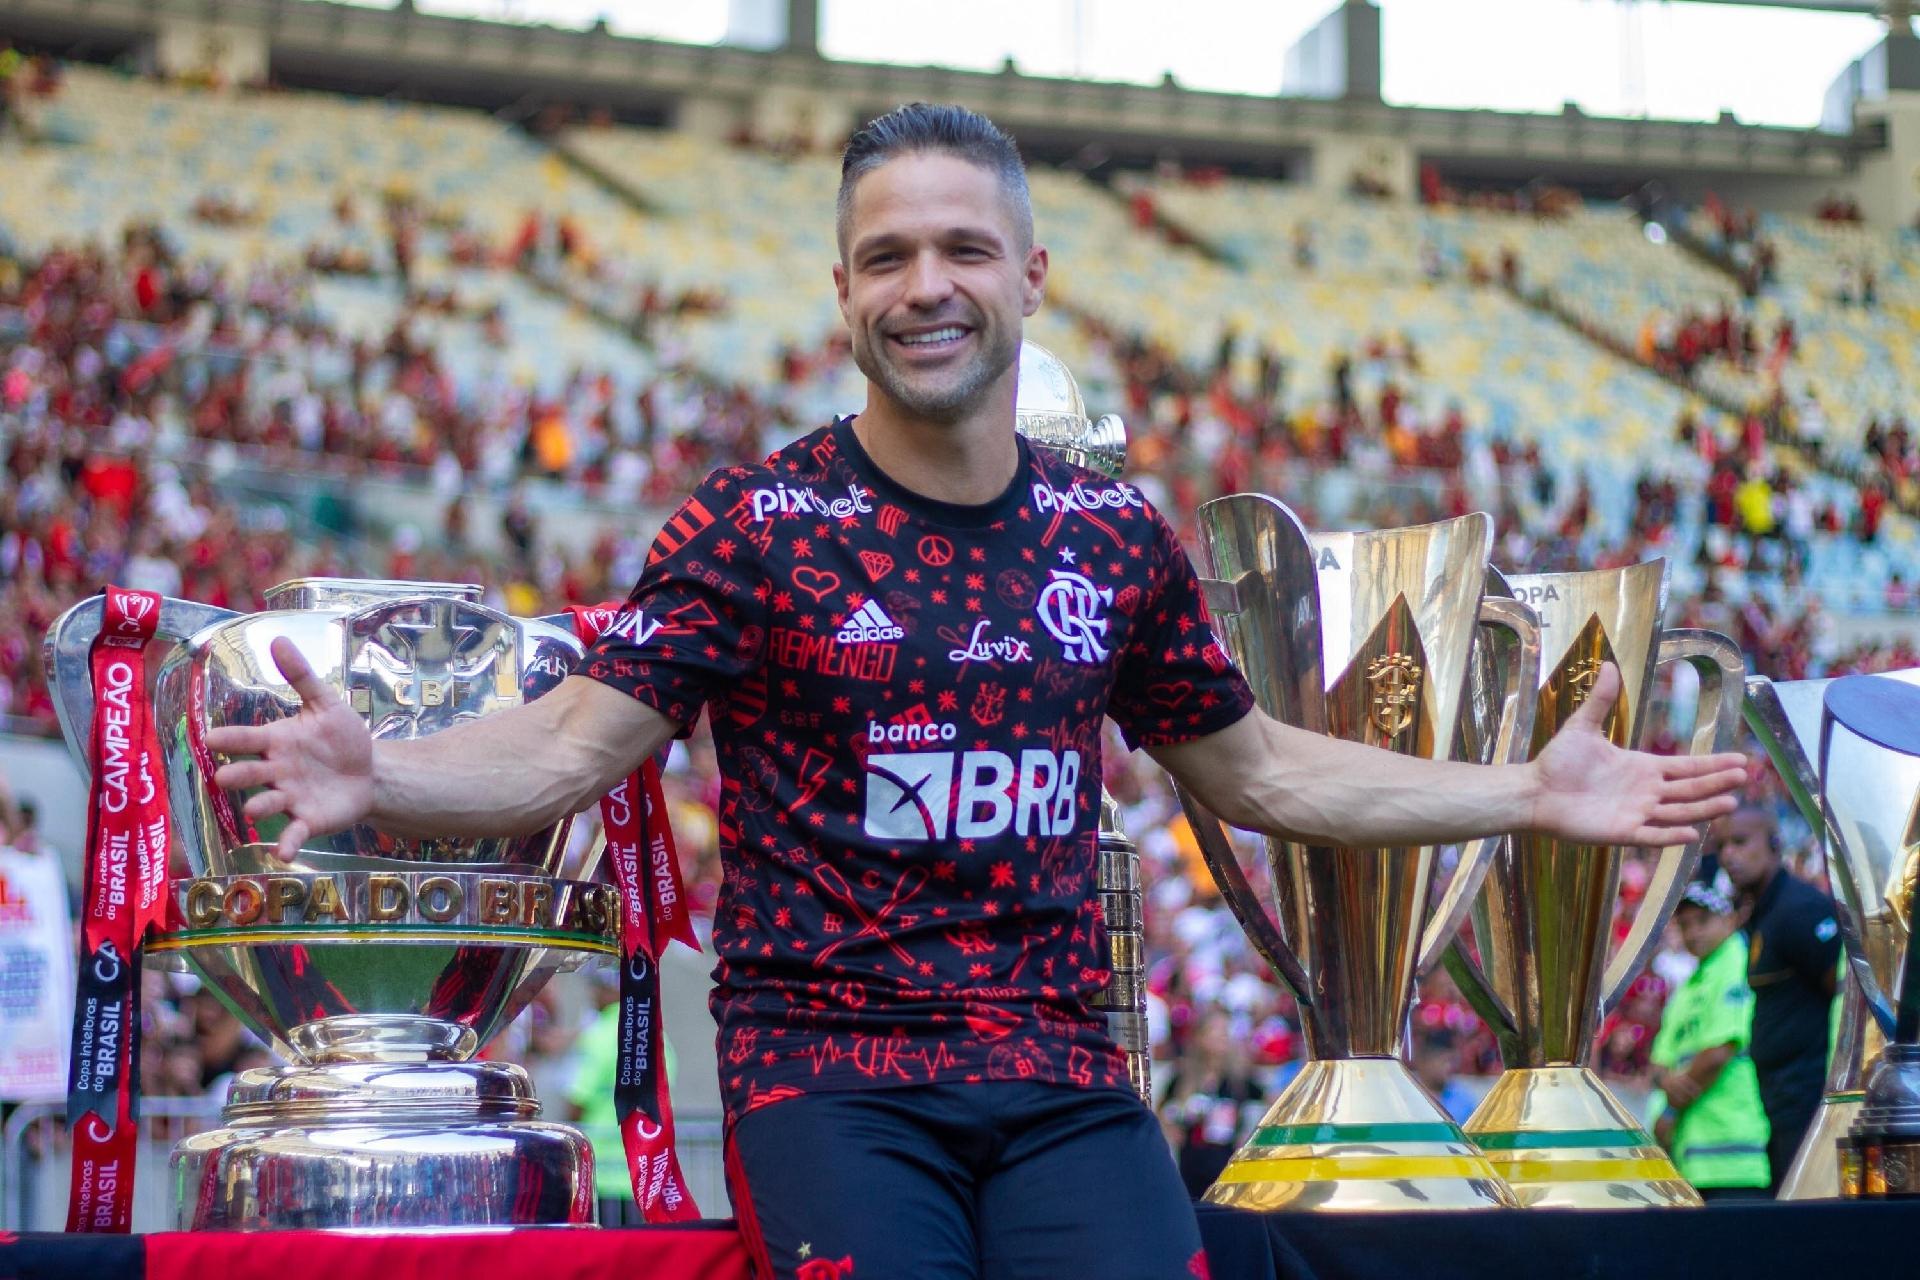 Diego Ribas é o novo embaixador da Escola Flamengo - ABC da Comunicação